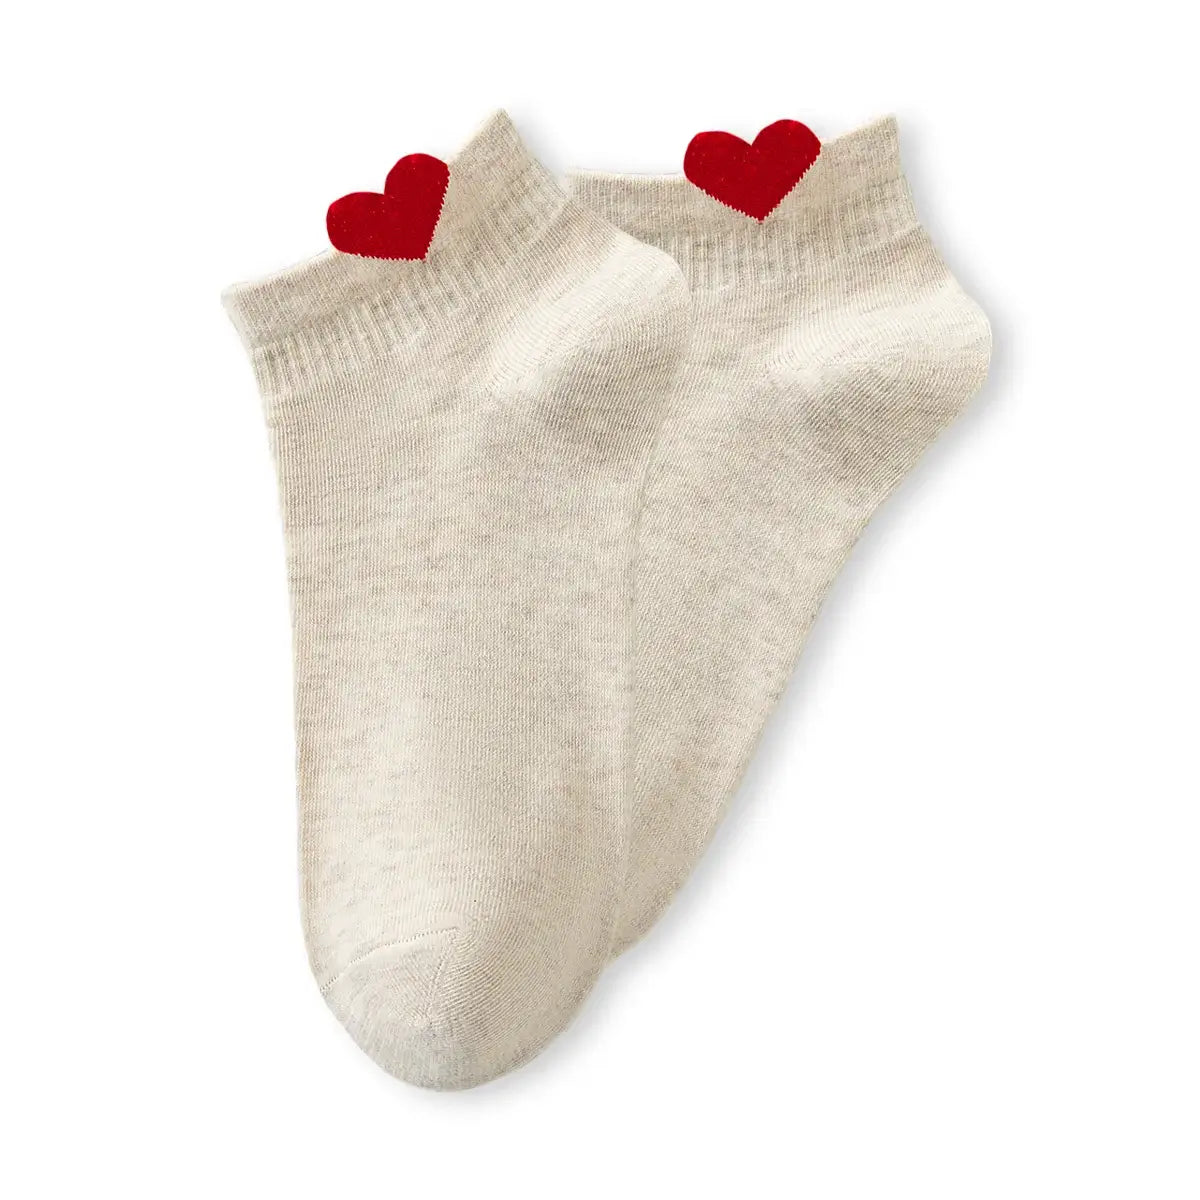 Chaussettes beige en coton à motif cœur pour femmes | Chaussettes douces et confortables | Fabriquées à partir de matériaux de haute qualité | Un cadeau parfait pour les femmes de tous âges | Disponibles en différentes couleurs